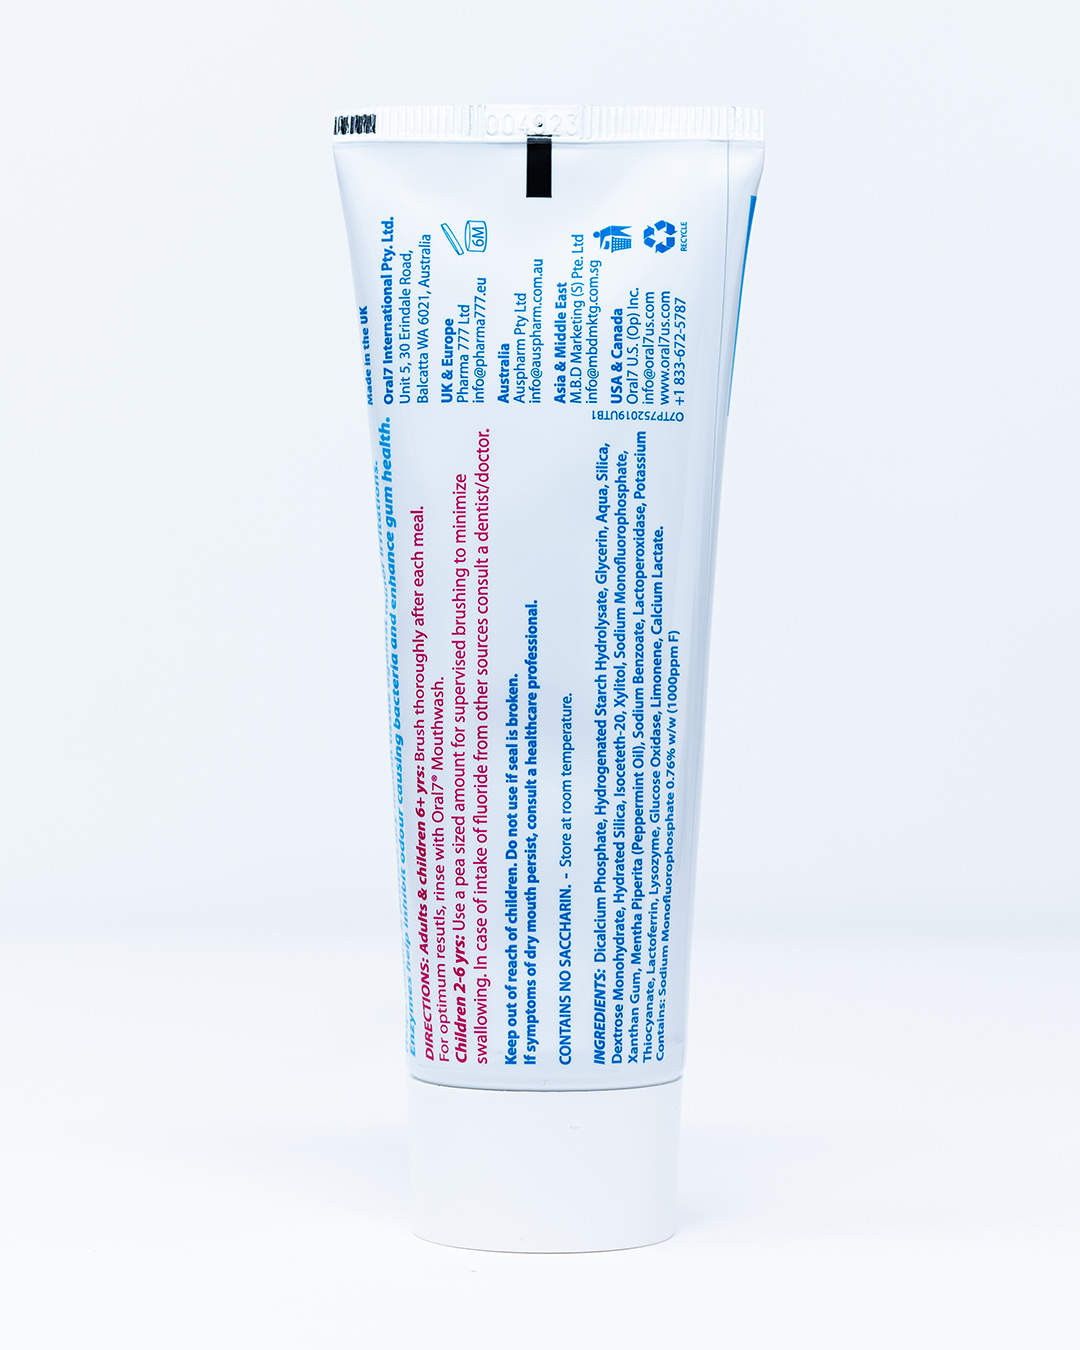 Oral7 Dentifricio Idratante – 75 ml